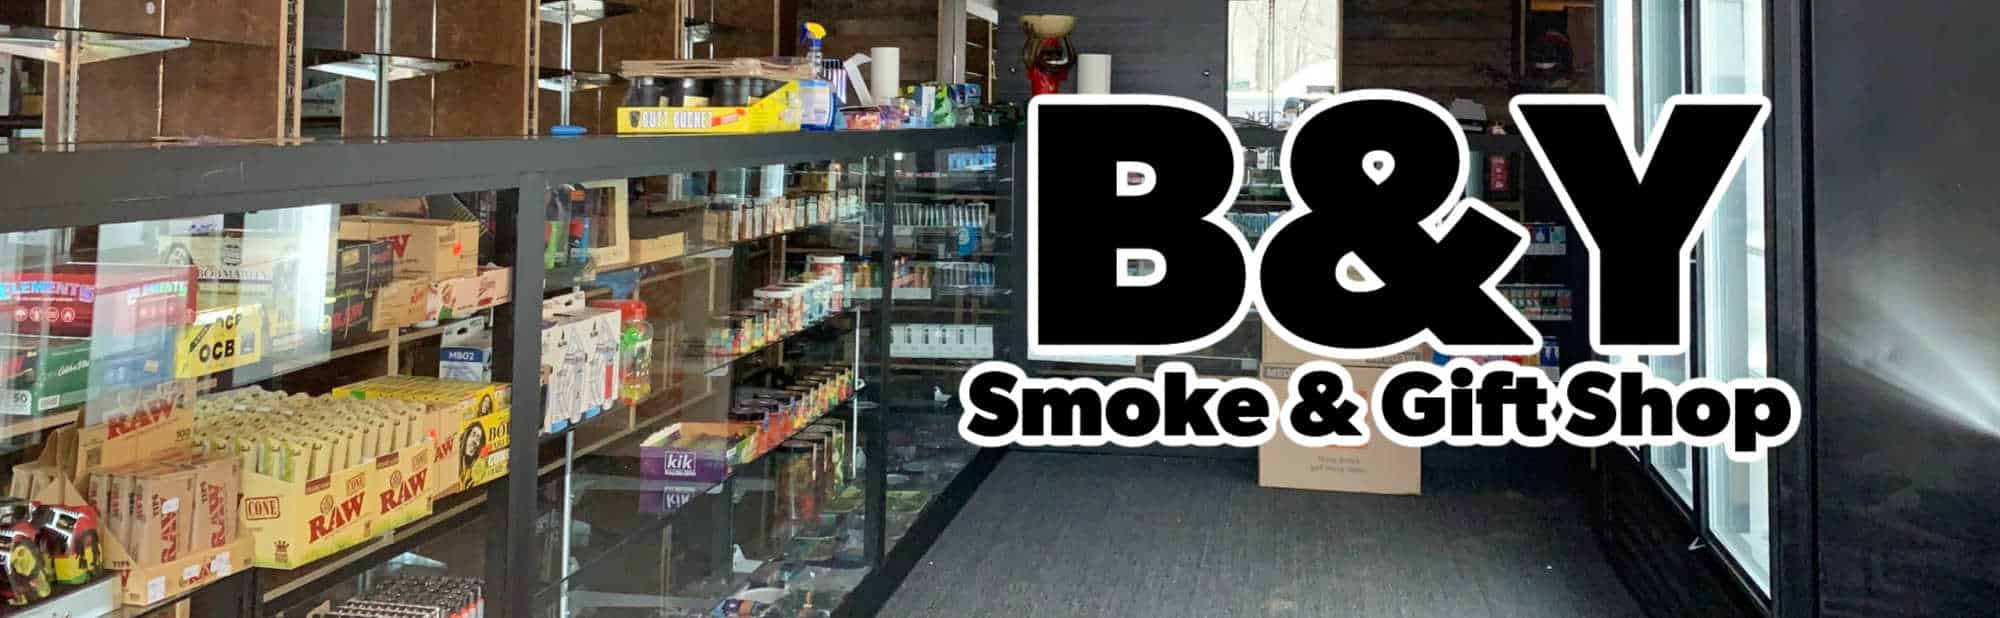 image of b&y smoke & gift shop in palo alto ca